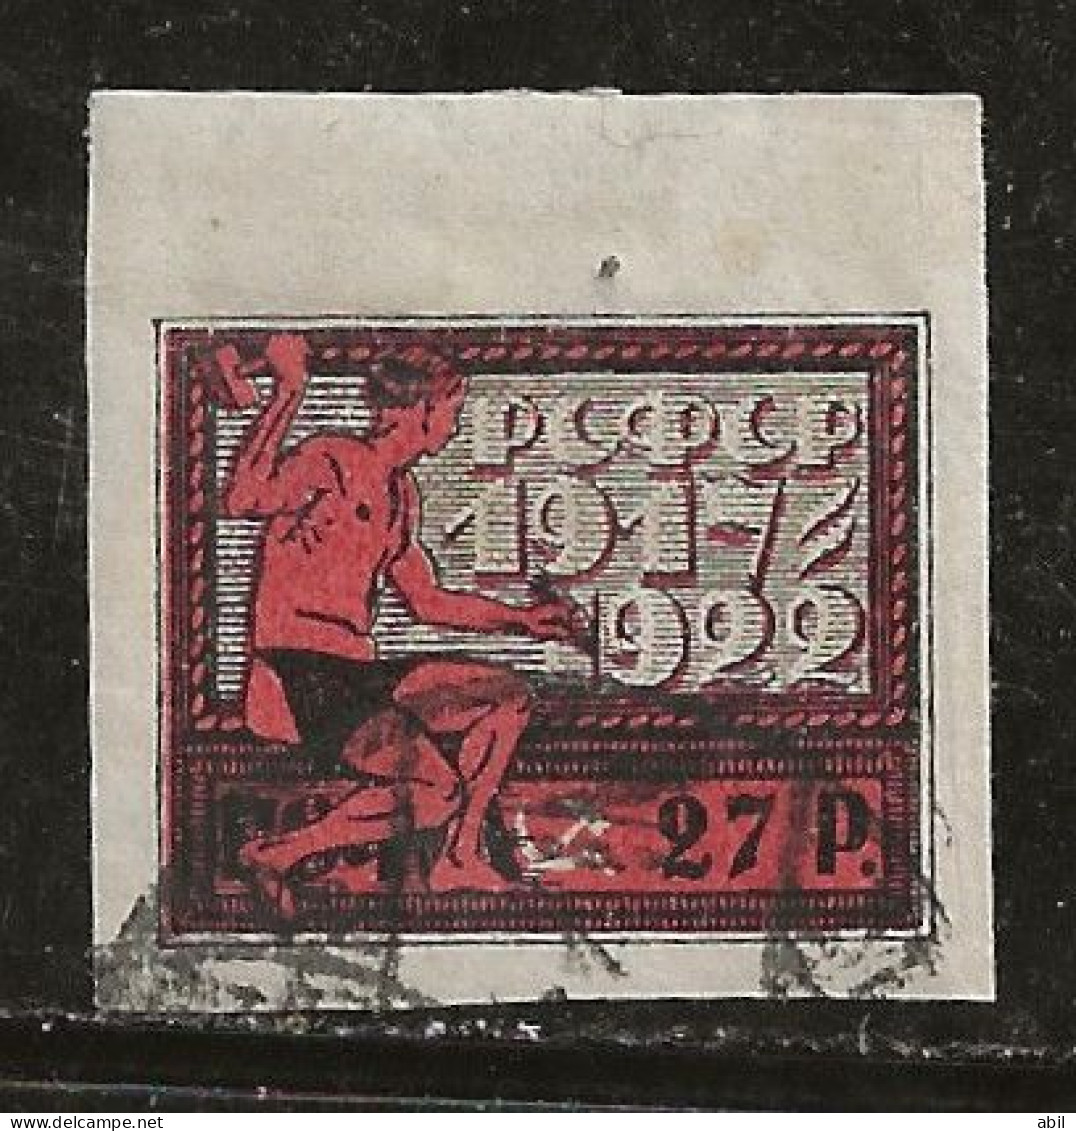 Russie 1922 N° Y&T :  173 Obl. - Used Stamps